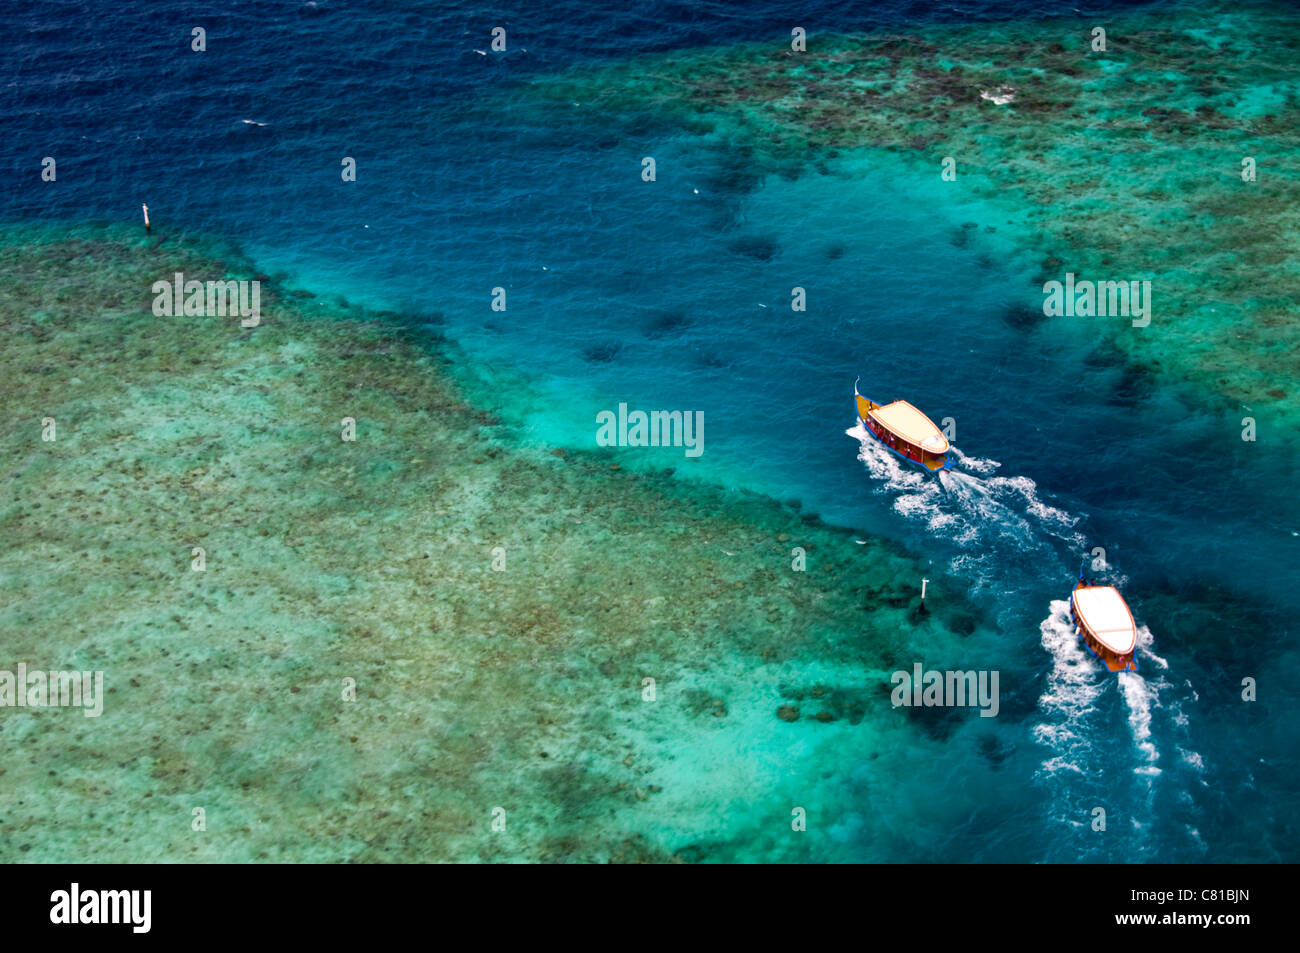 Luftaufnahme der Malediven-Inseln, Strände, Paradies, Korallenriff, Abenteuer, Urlaub, tropische Insel, Blauwasser, klares Wasser Stockfoto